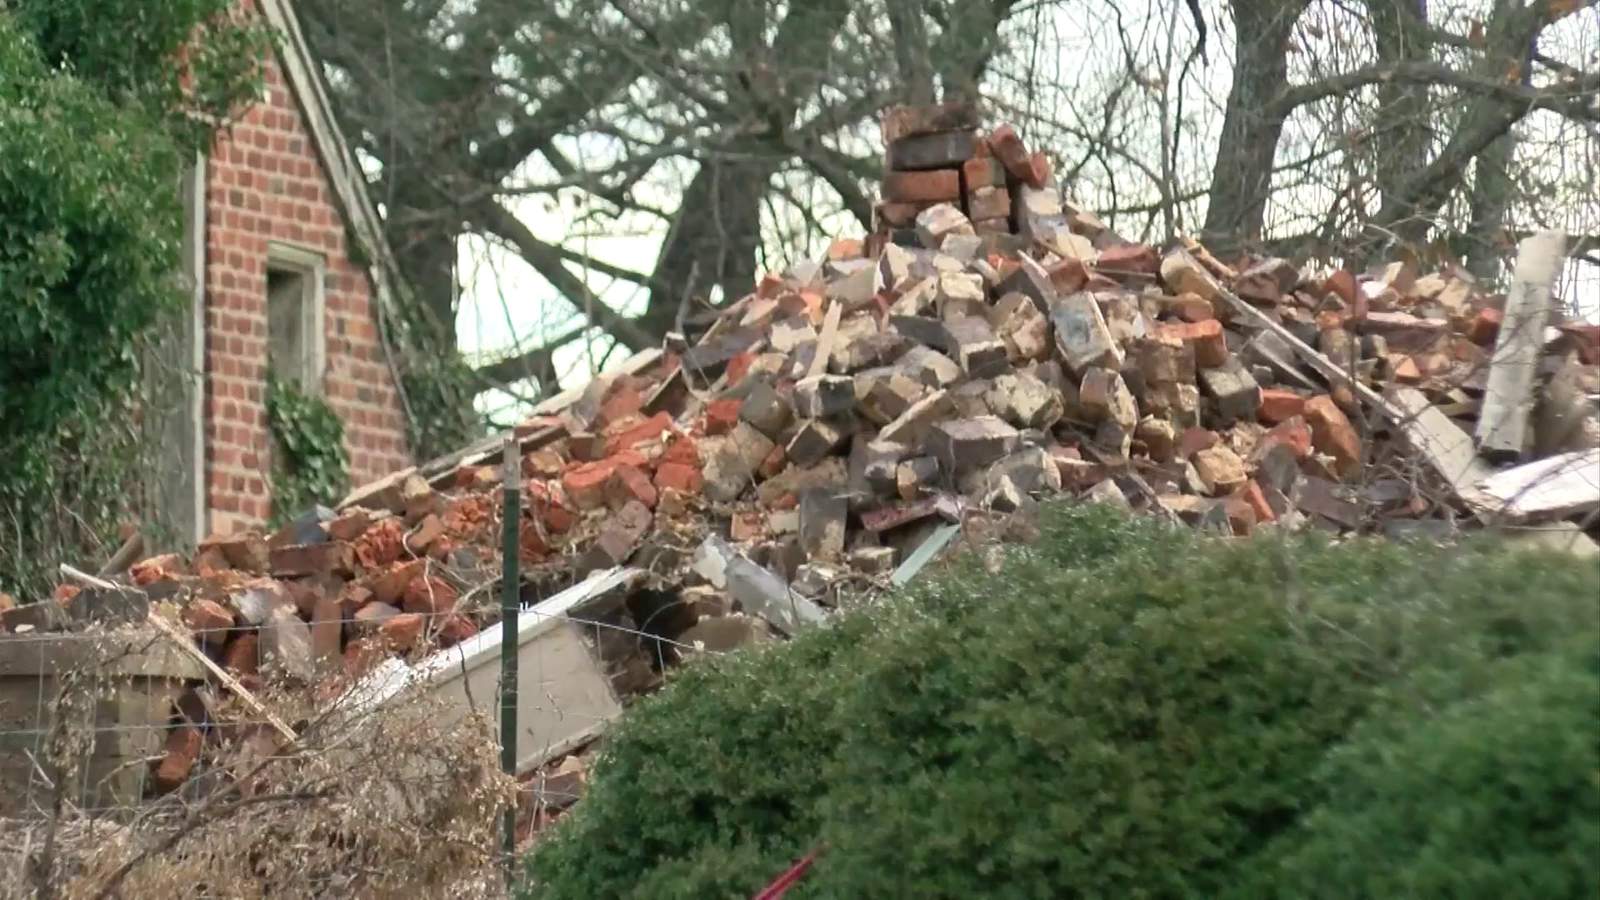 Eyesore, hazardous home in Amherst County under investigation